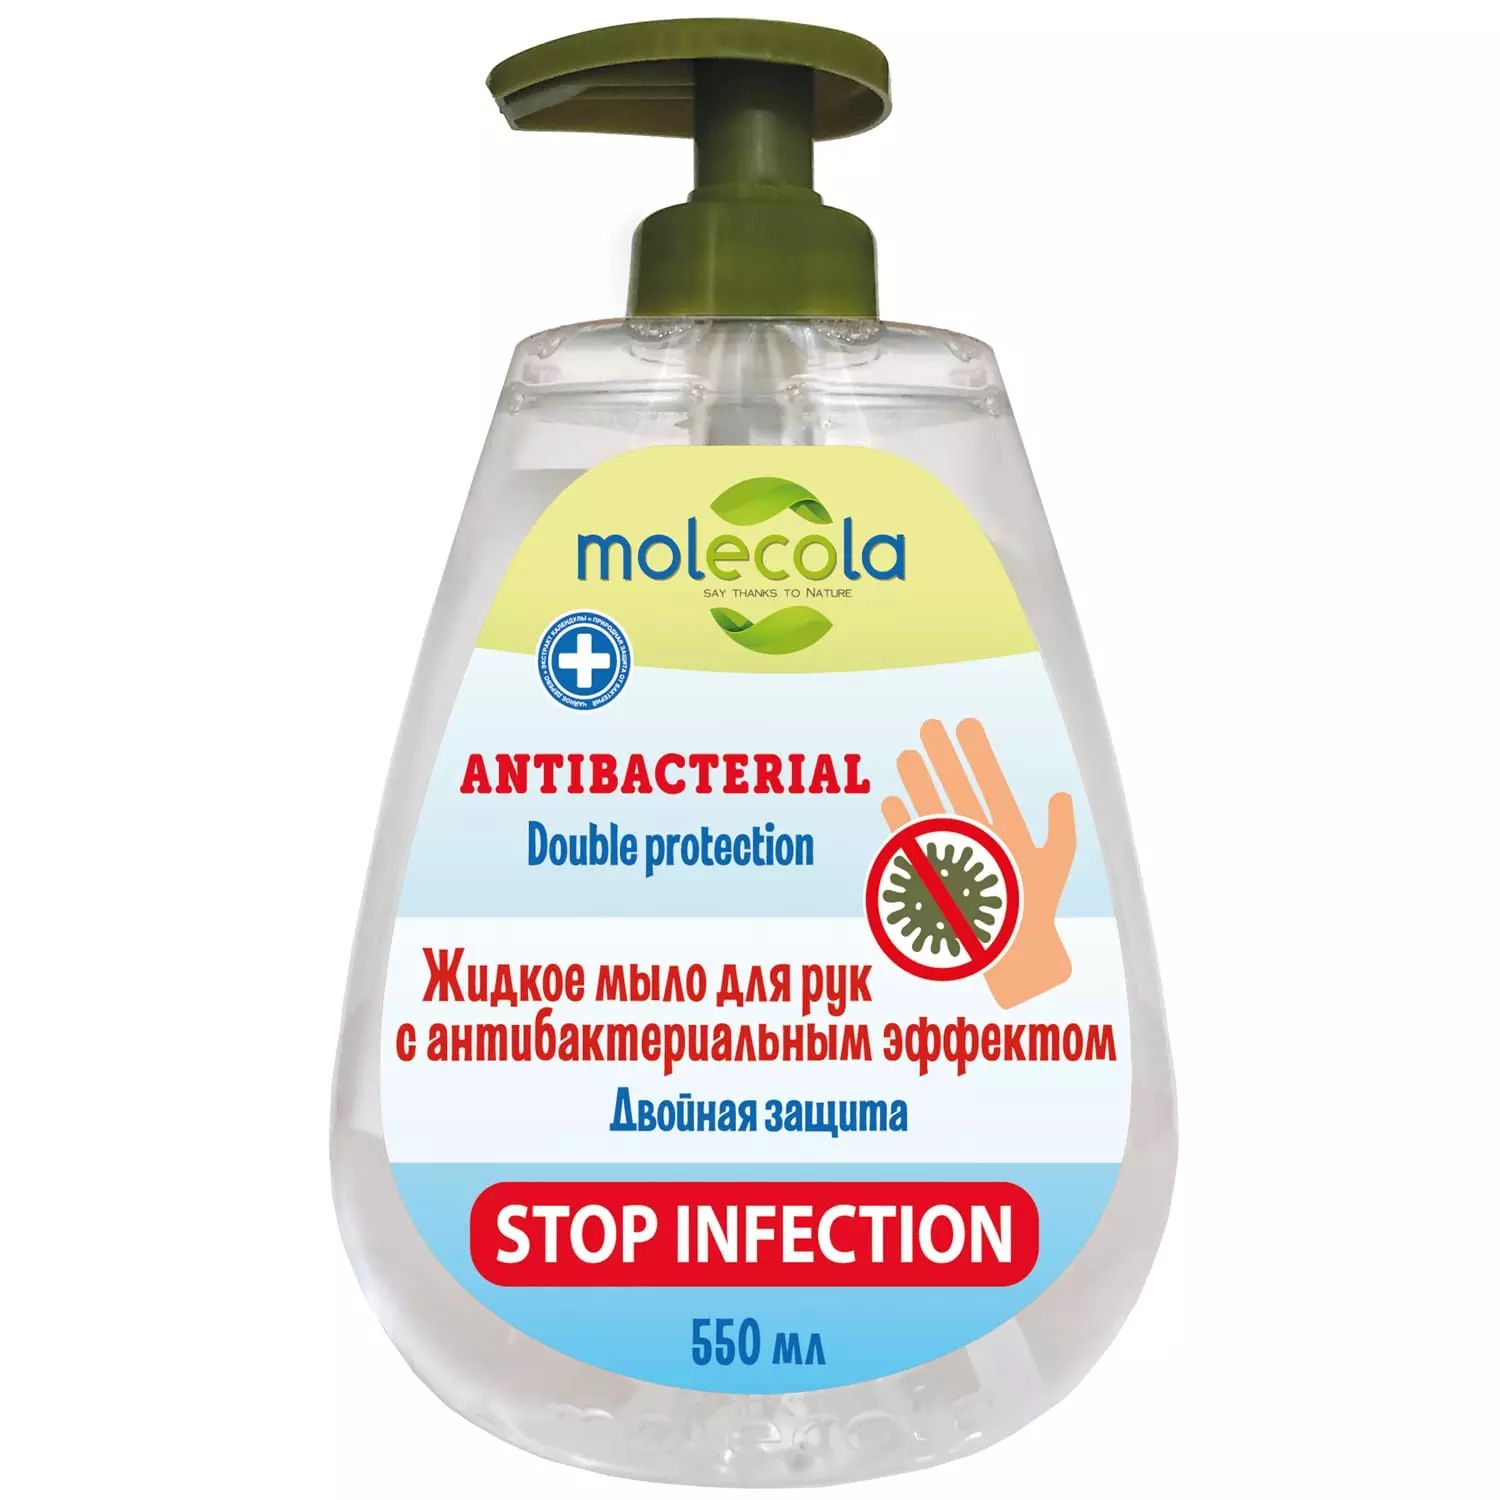 Мыло жидкое для рук Molecola Doble Protection с антибактериальным эффектом 500 мл мыло жидкое absolut kids календула антибактериальное 250 мл х 6 шт